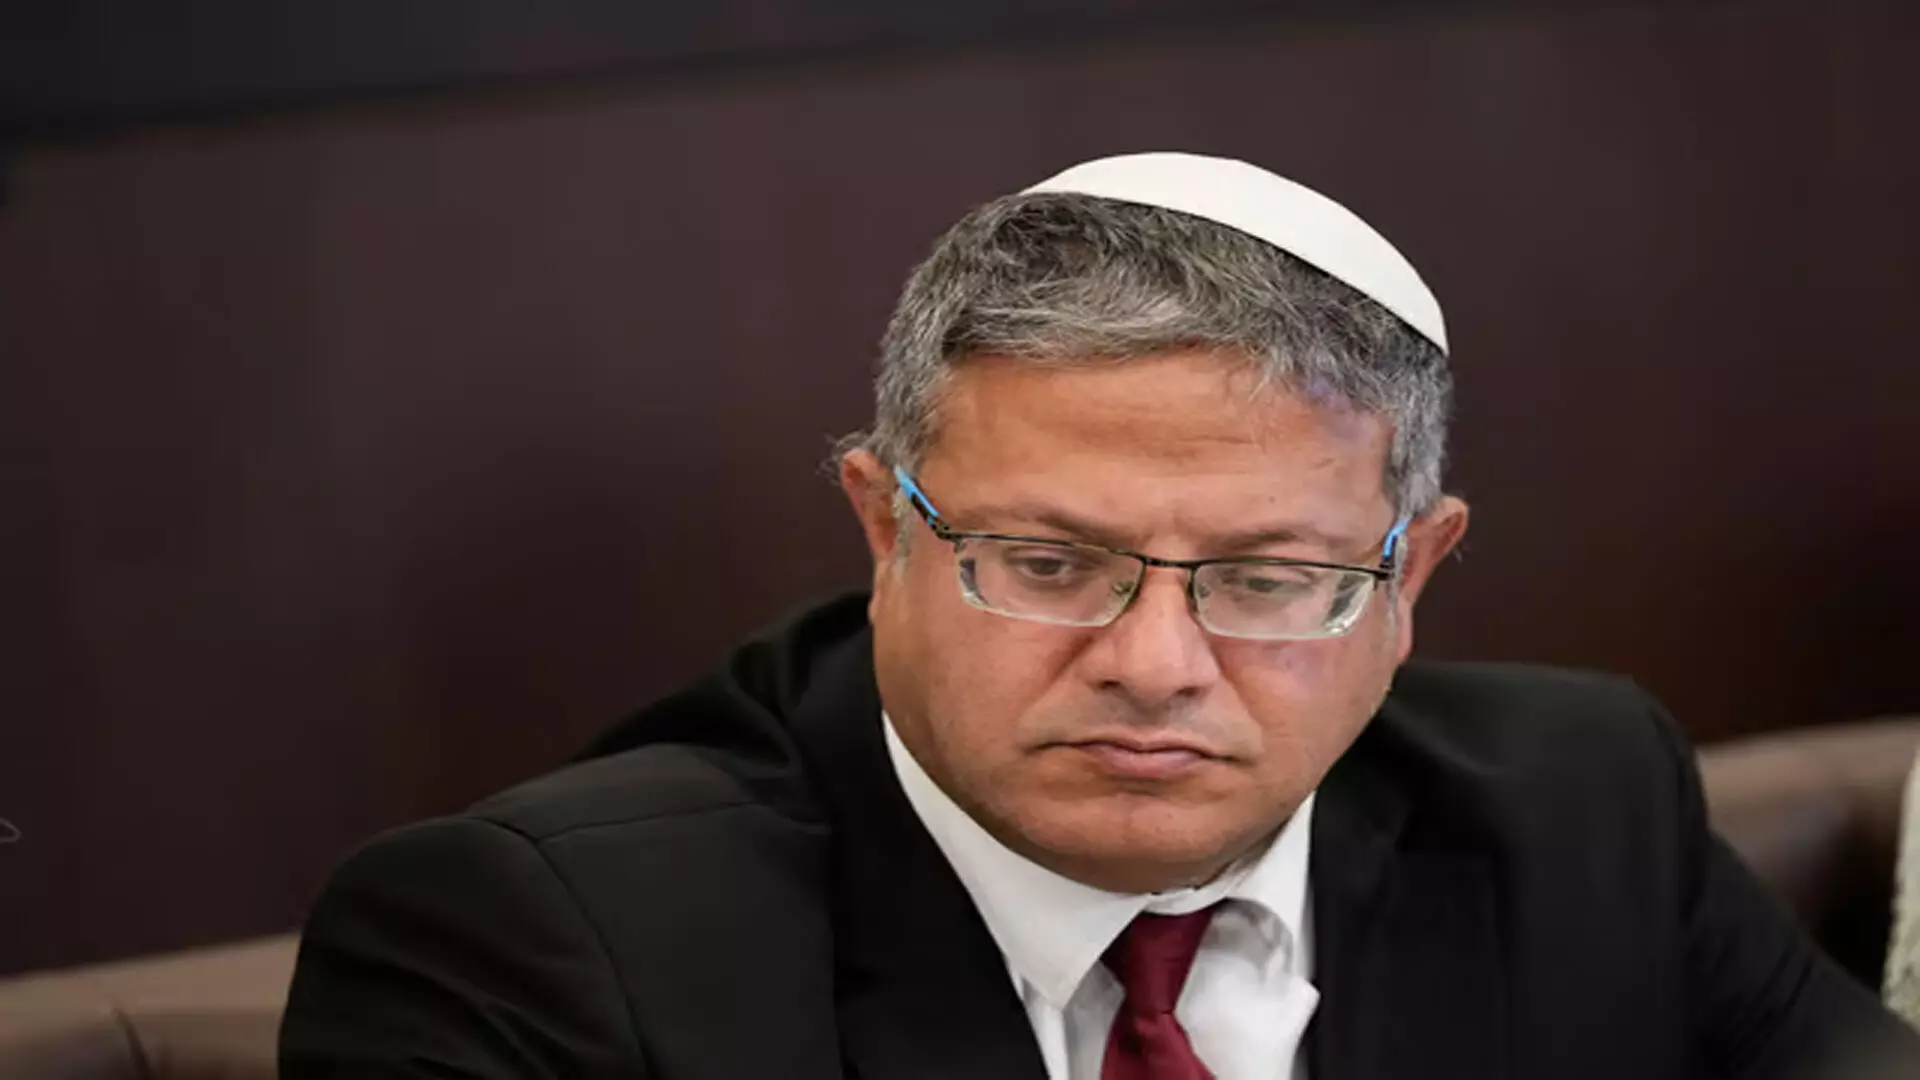 Israeli मंत्री ने संवेदनशील यरुशलम पवित्र स्थल का दौरा किया